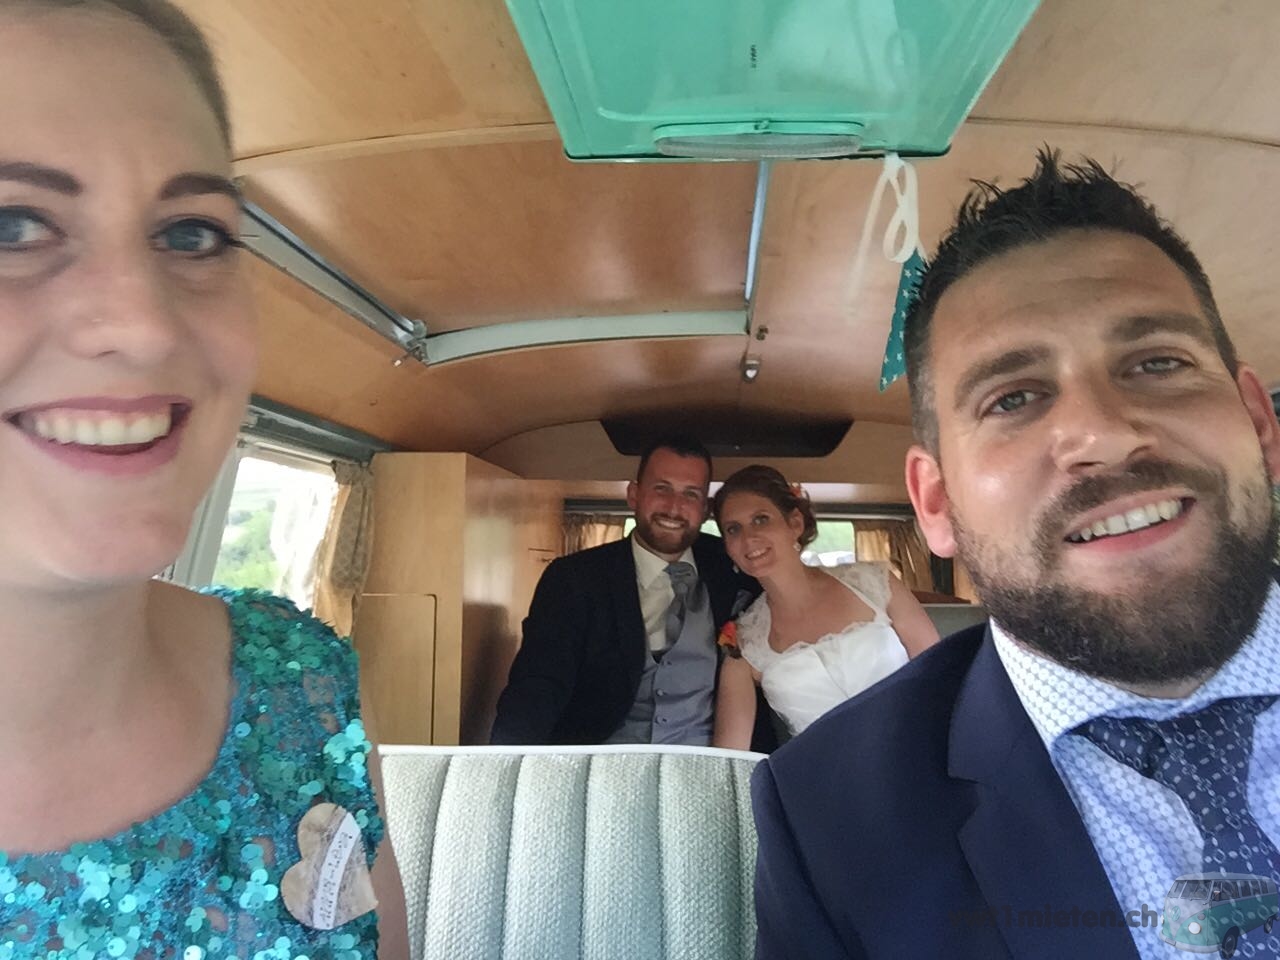 Die Trauzeugen und das Hochzeitspaar im Bus